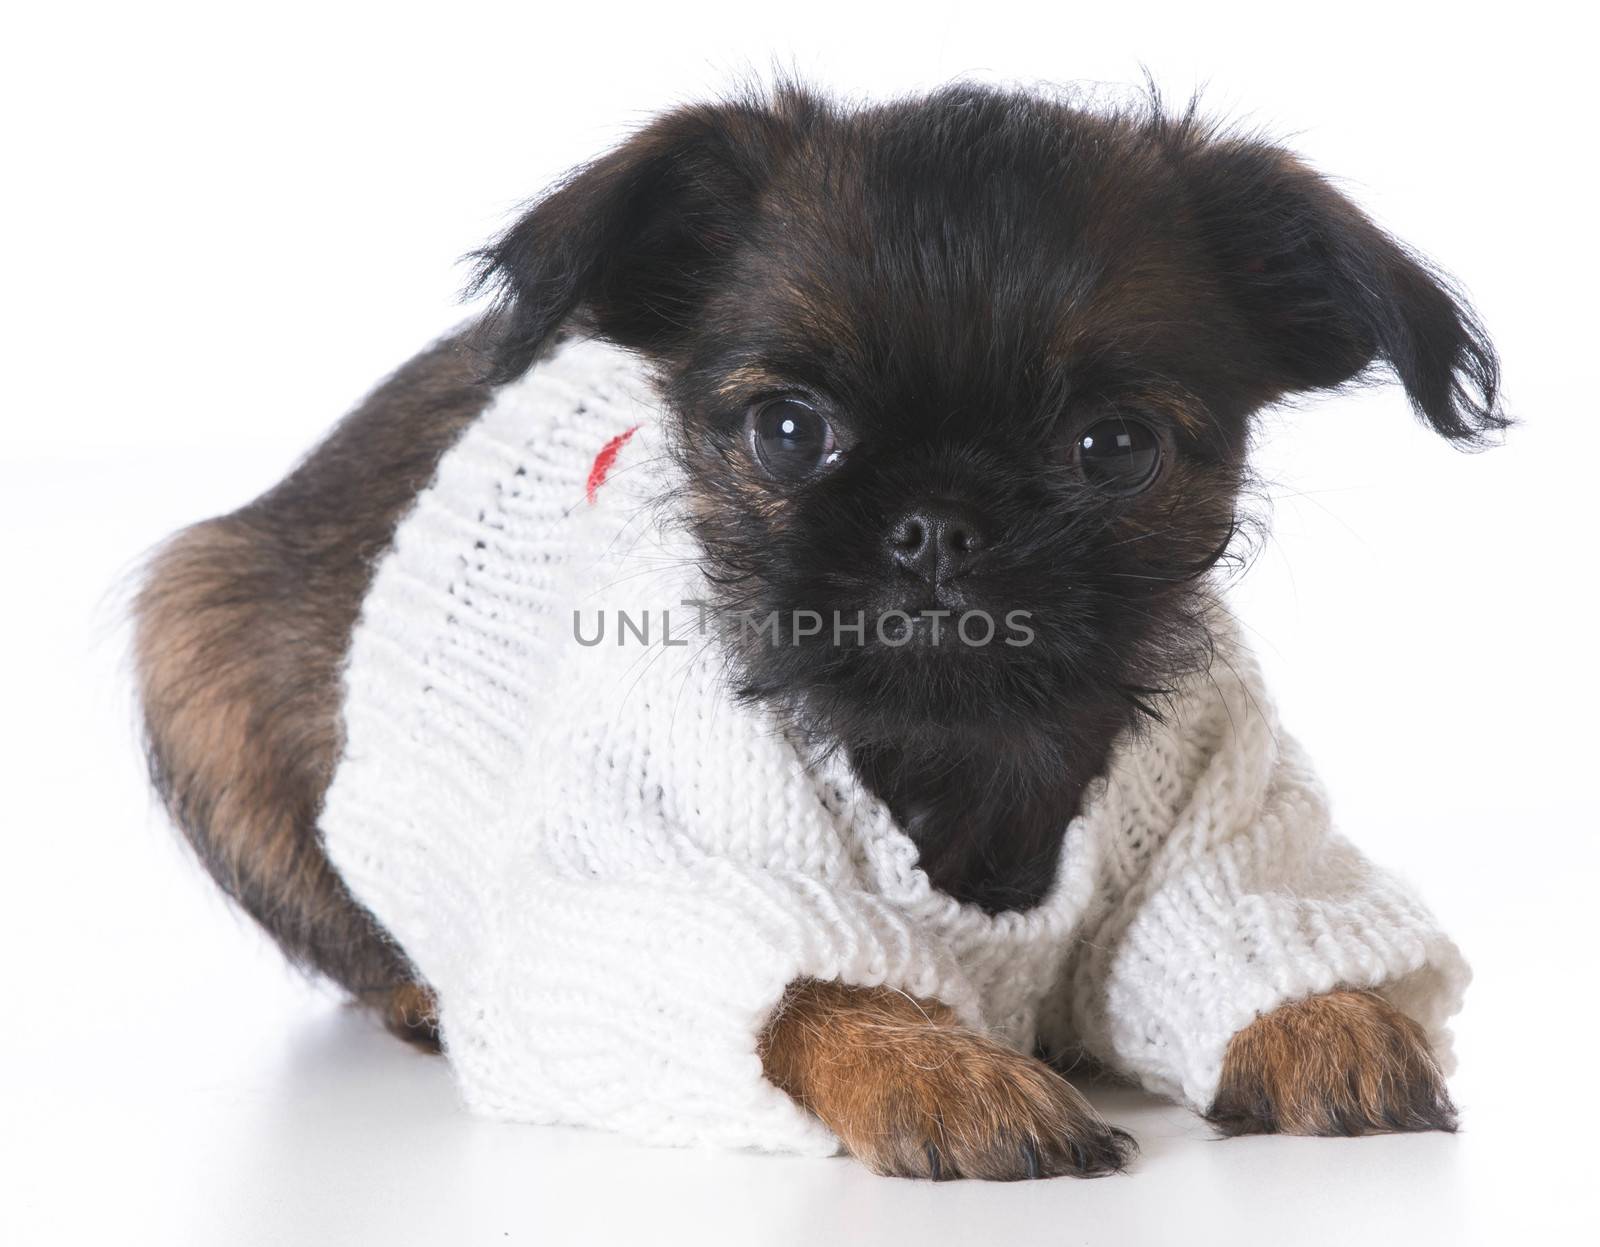 cute puppy - brussels griffon wearing sweater - 8 weeks old